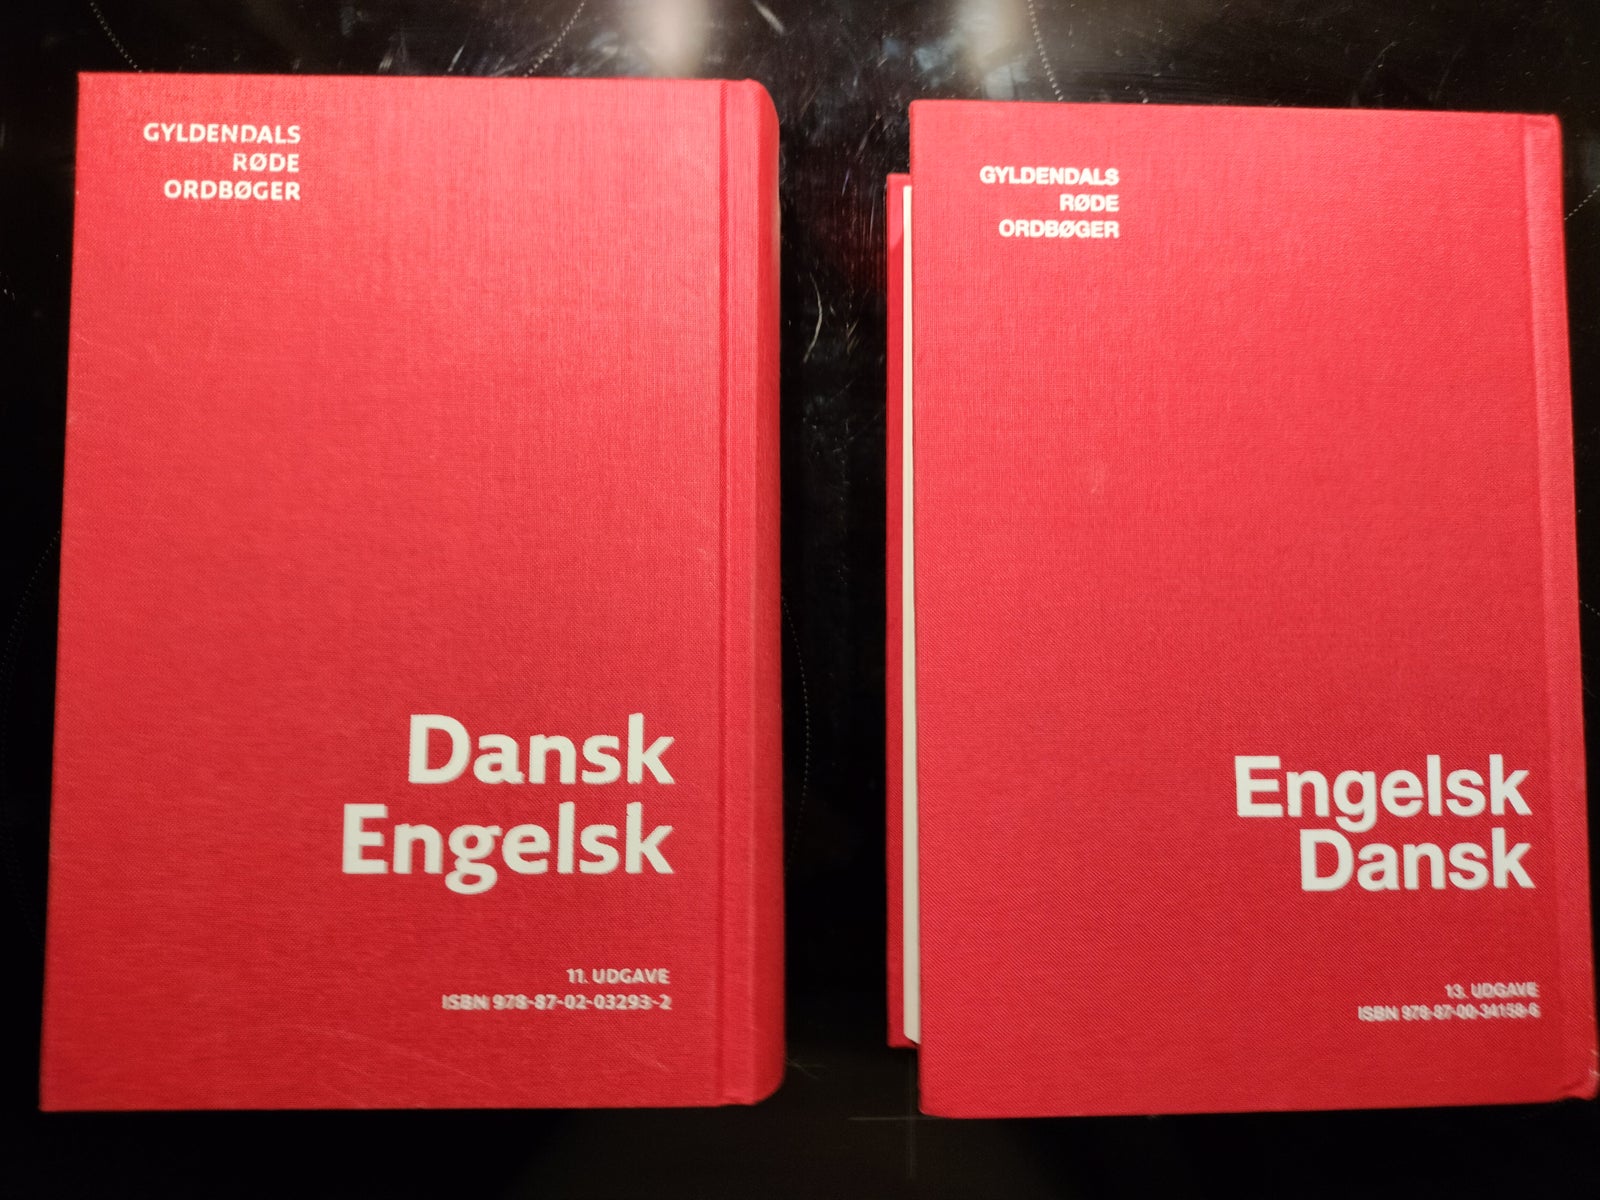 Dansk Engelsk - Engelsk dansk, Gyldendal